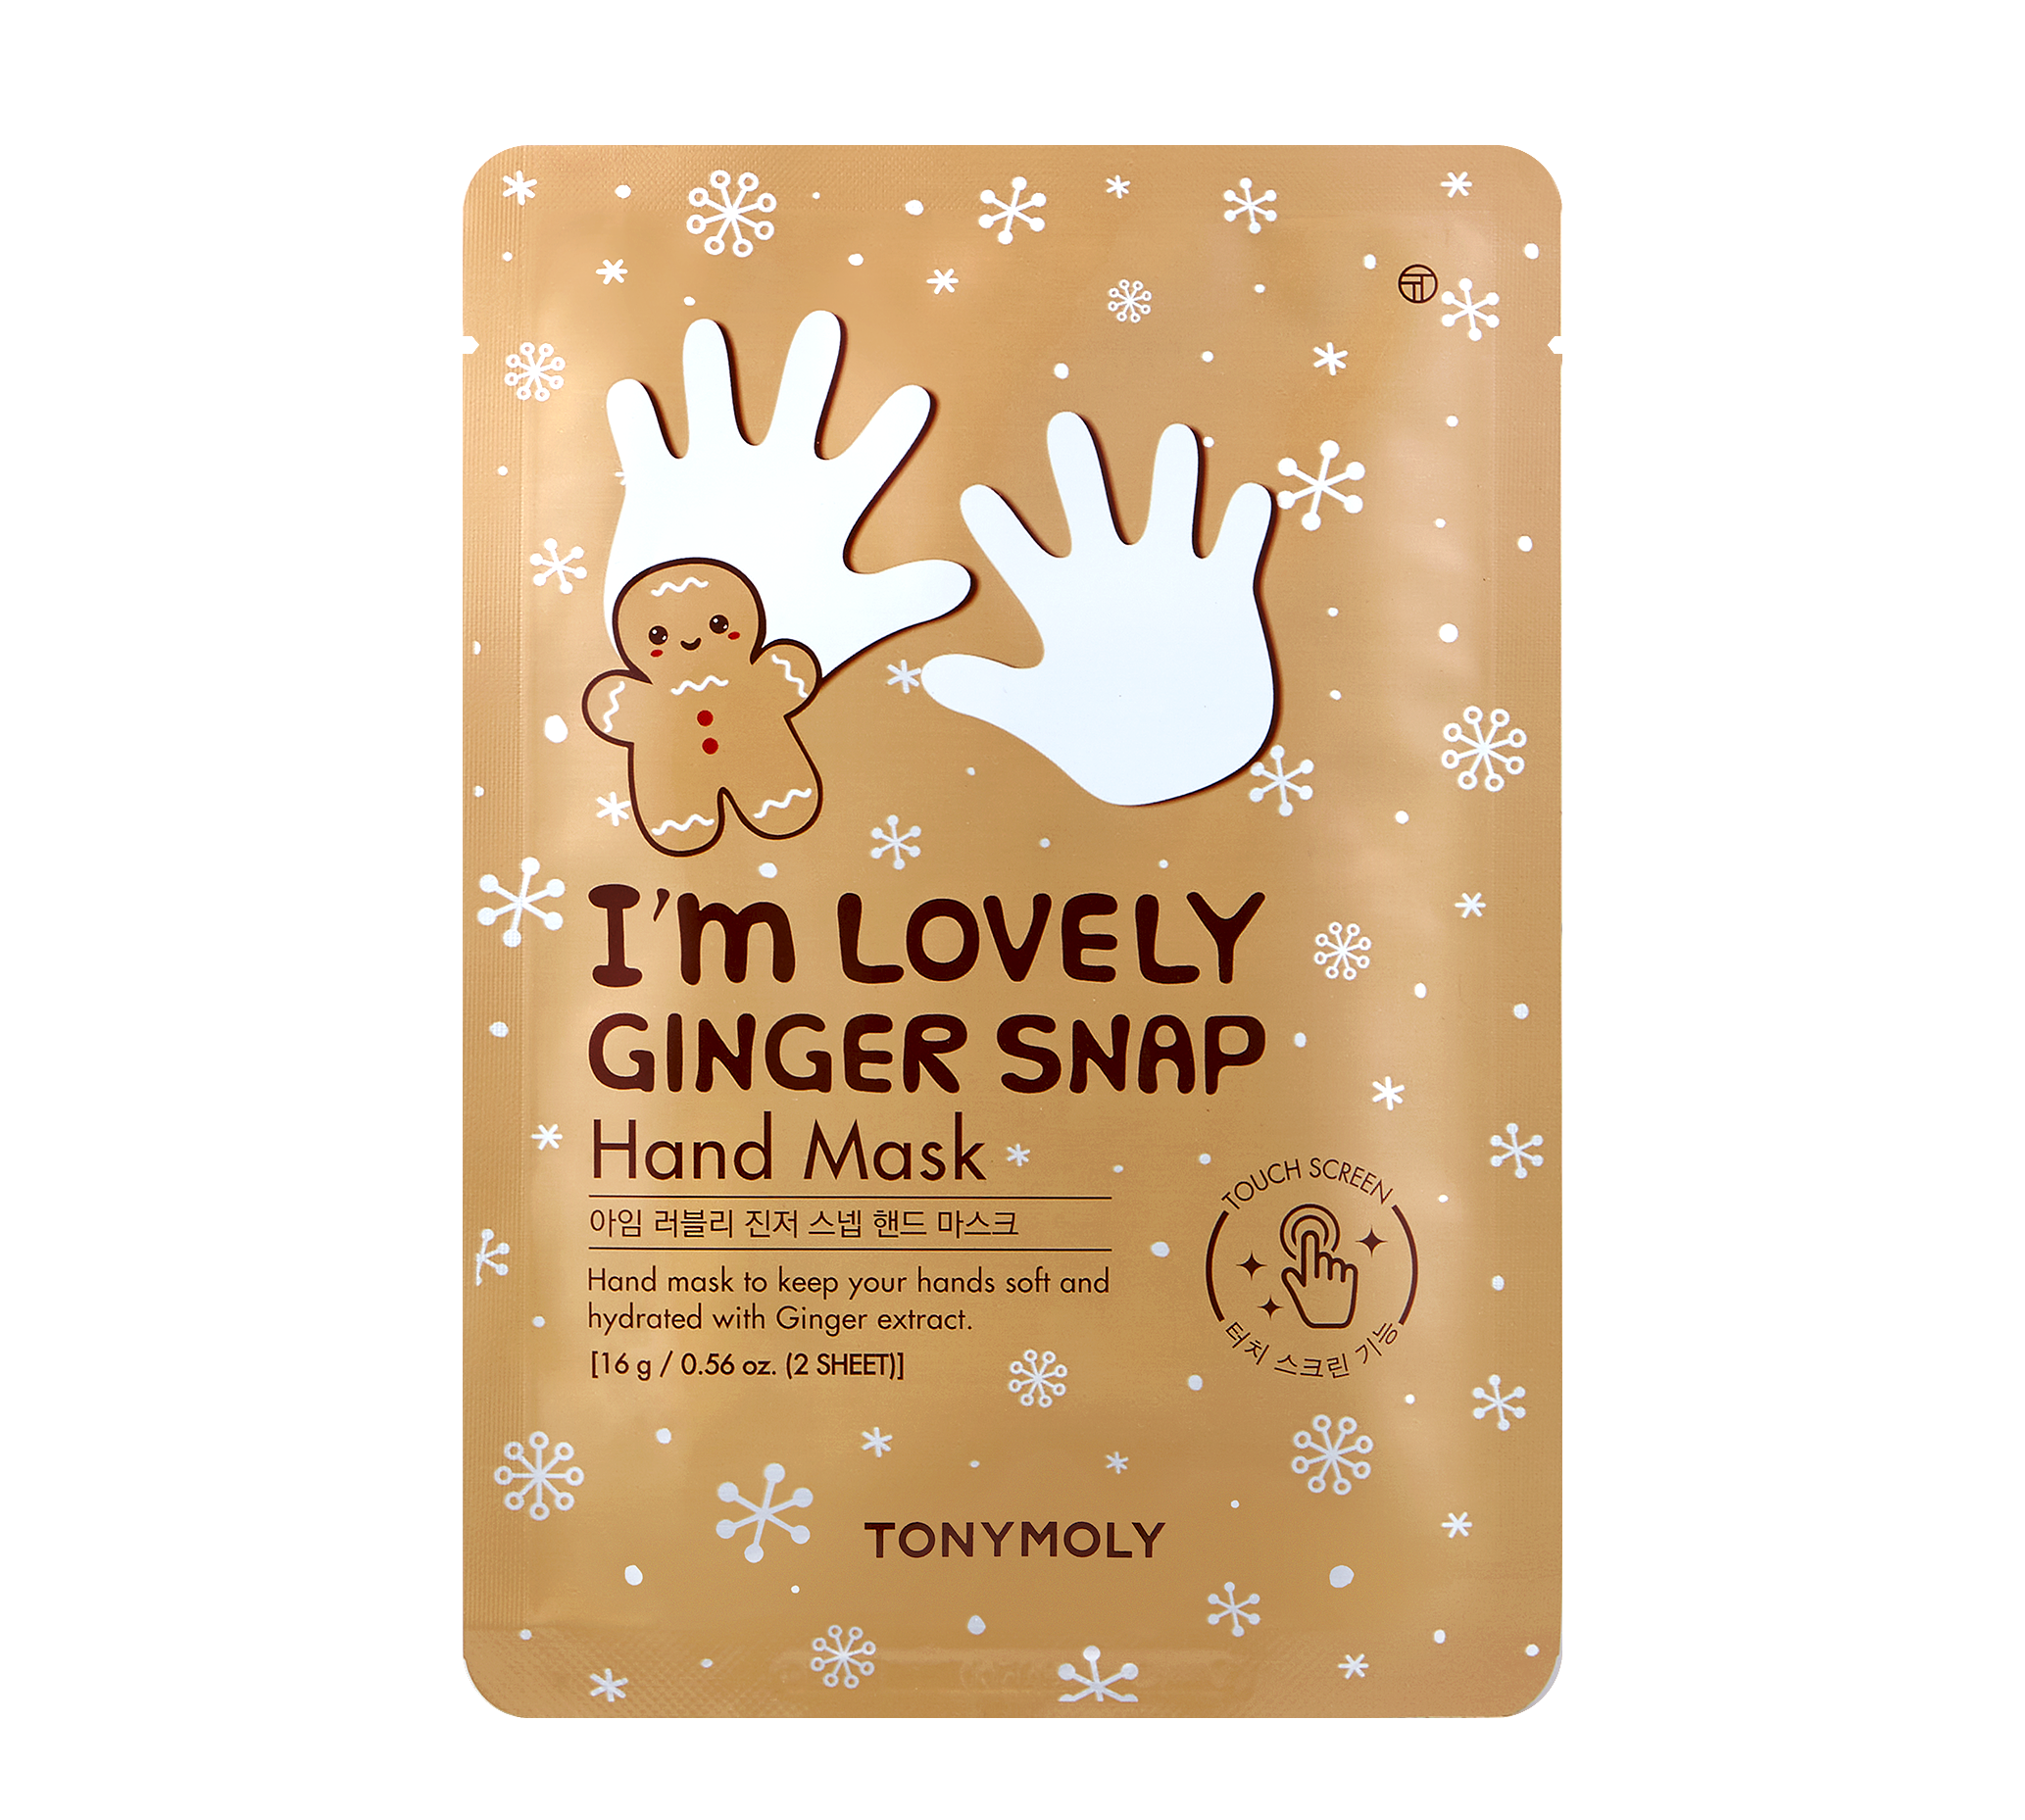 I'm Lovely Ginger Snap Hand Mask: Set of 1